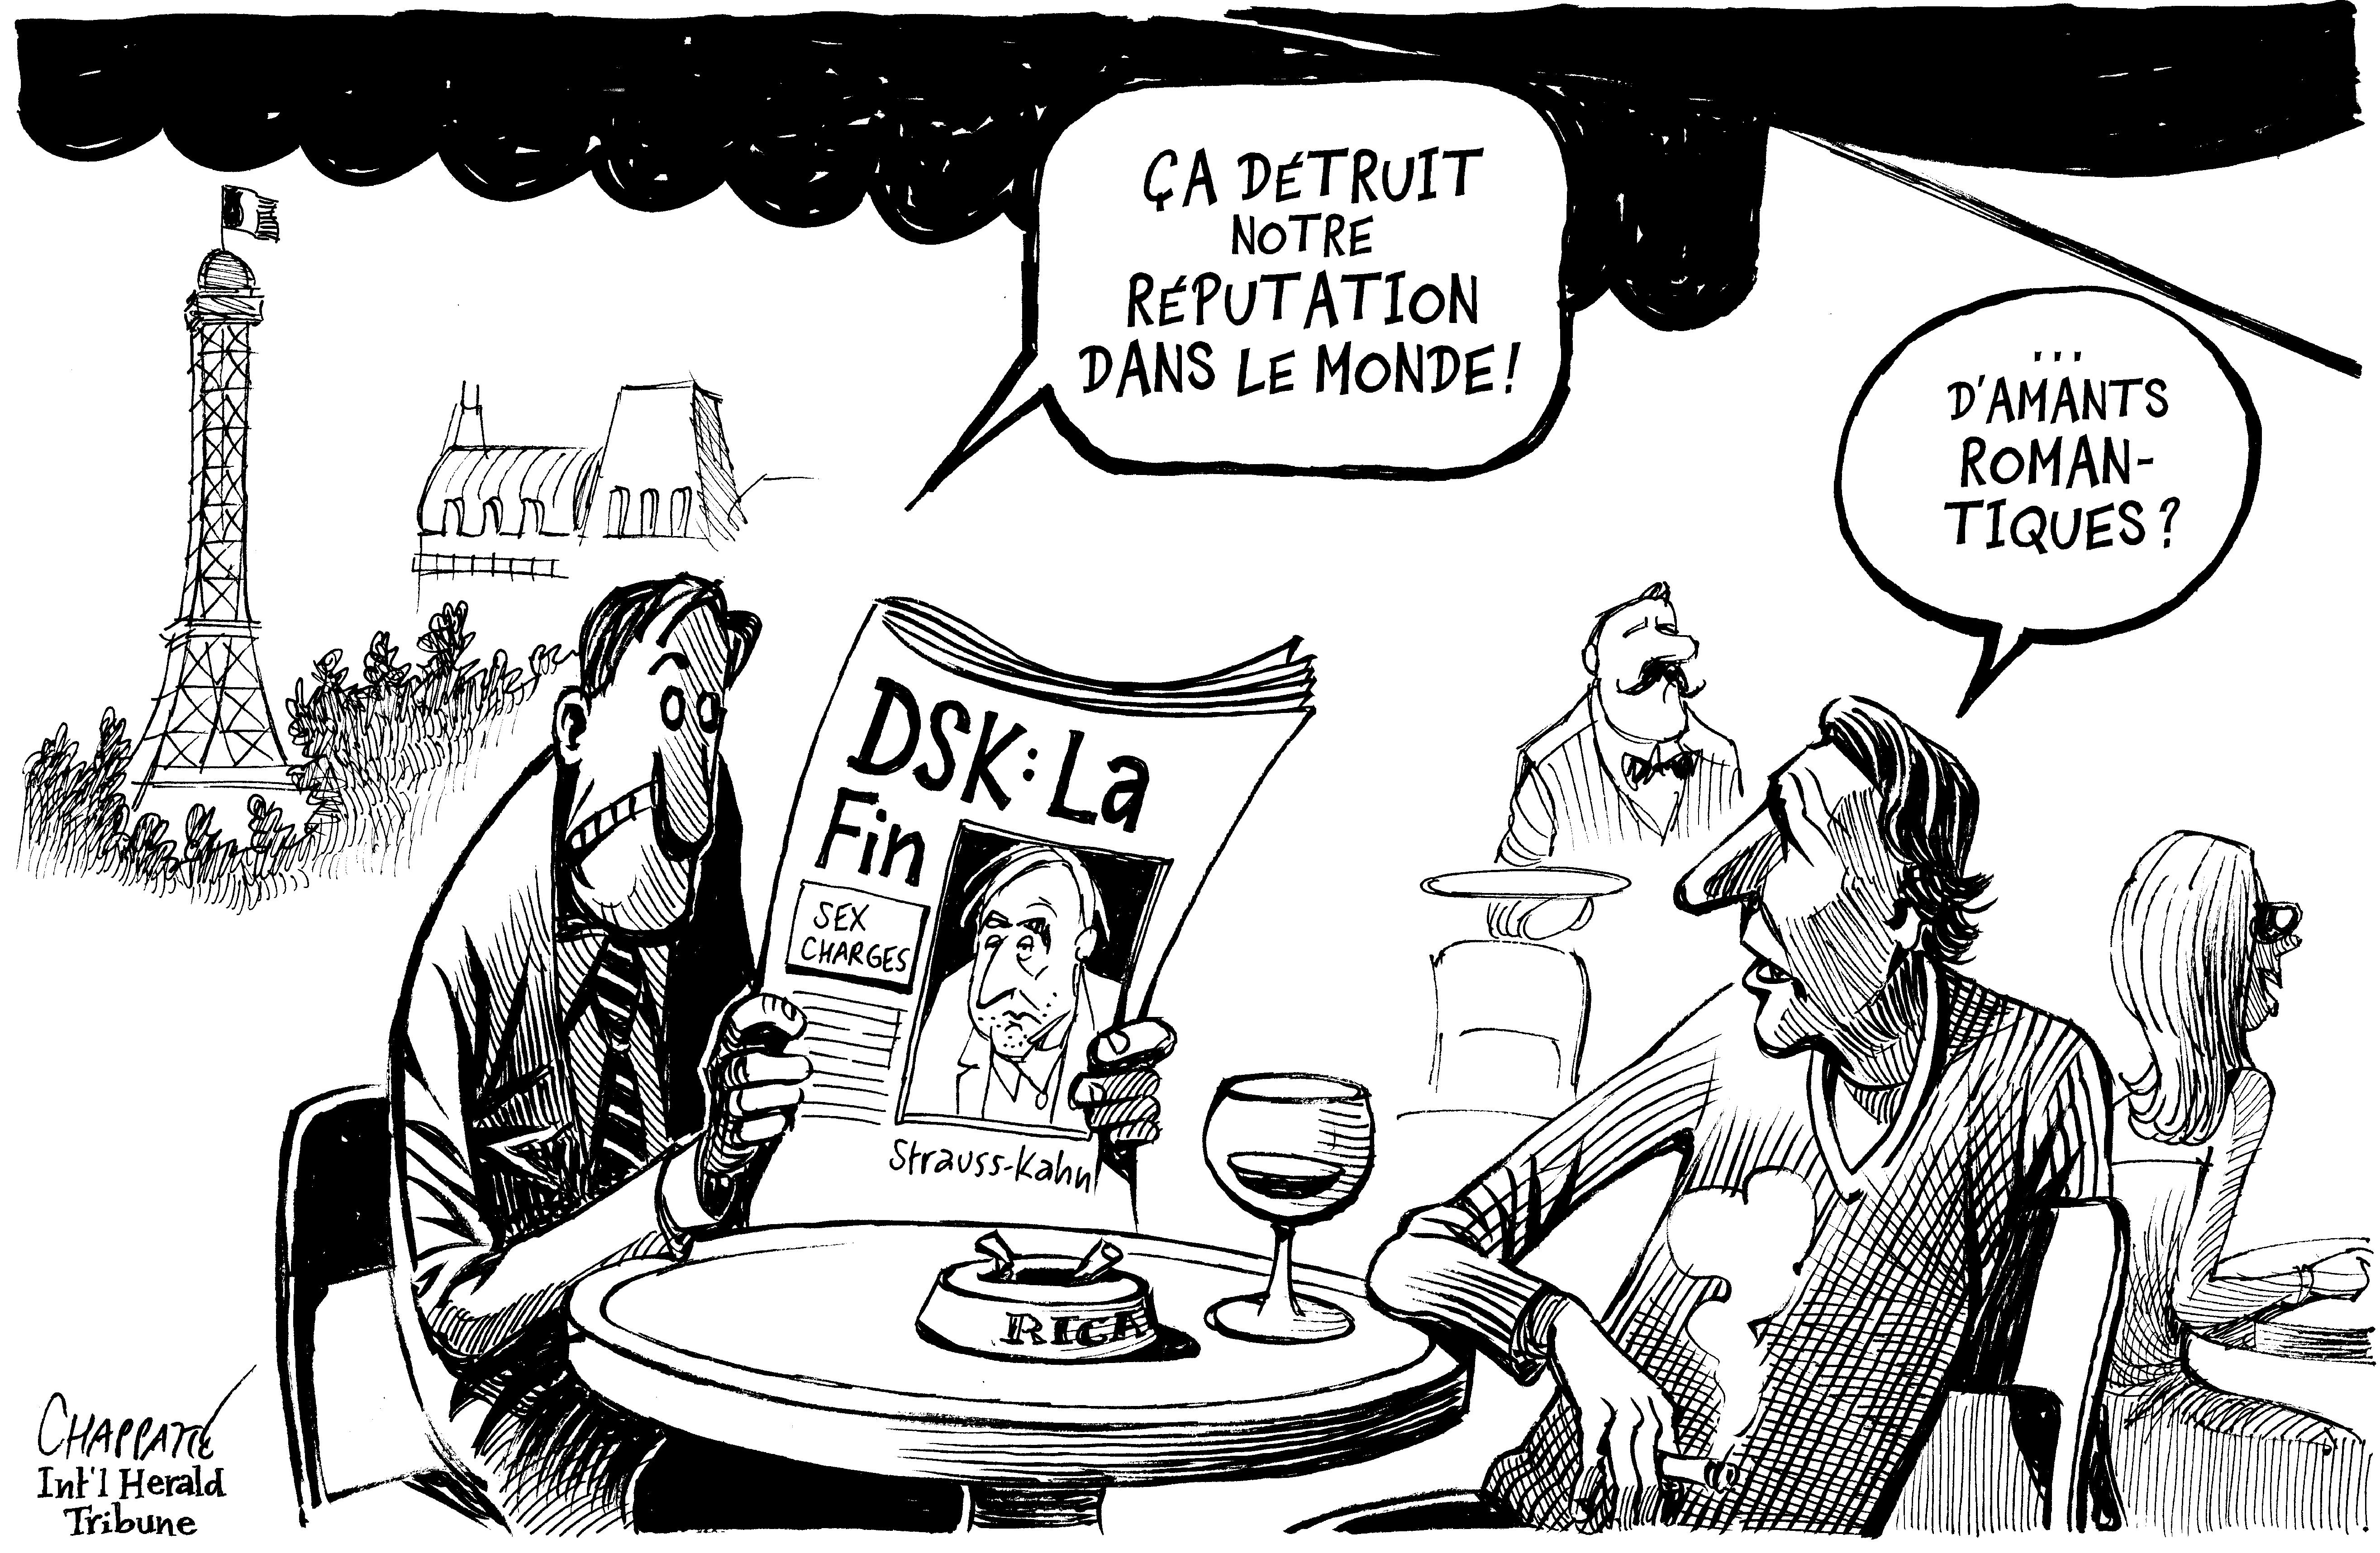 Le scandale DSK